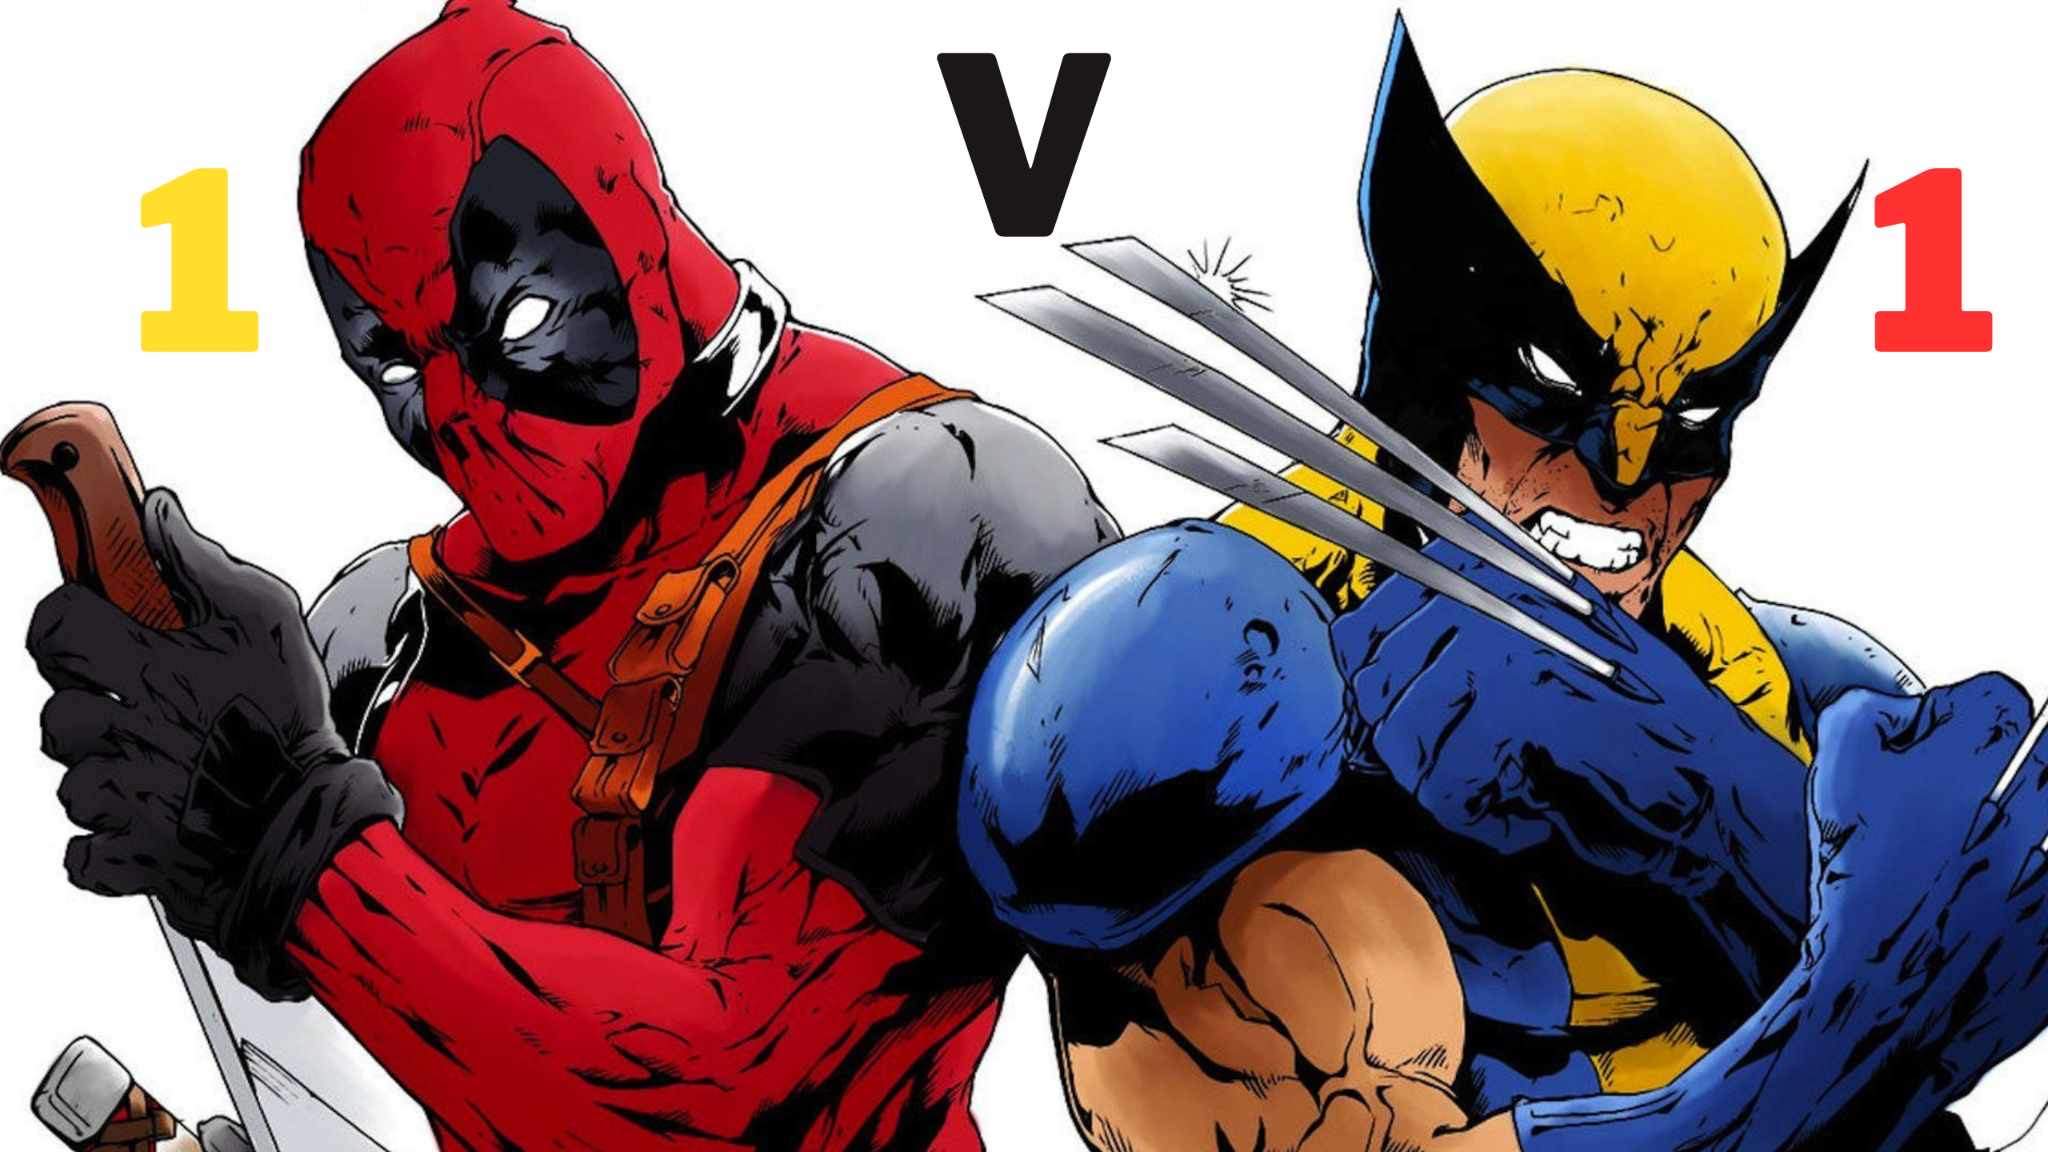 1v1 Deadpool vs Wolverine